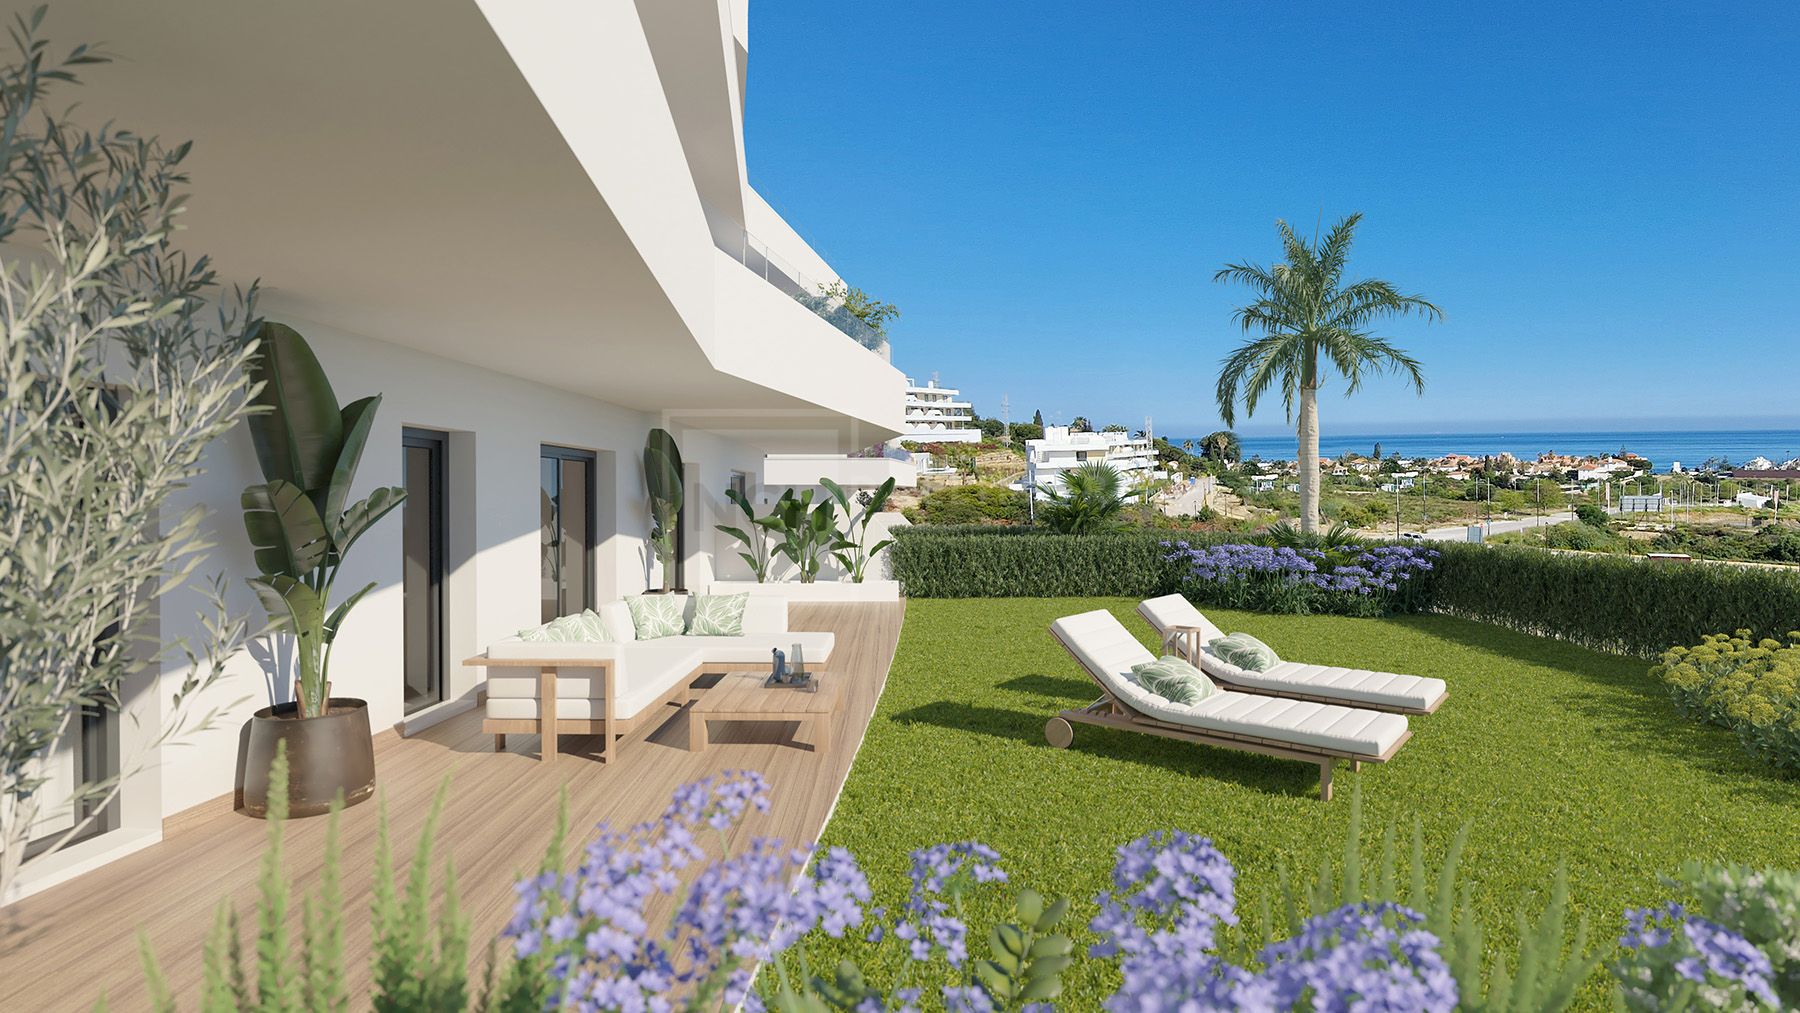 ONE80 Suites, apartamentos de diseño vanguardista y vistas al mar en Estepona.